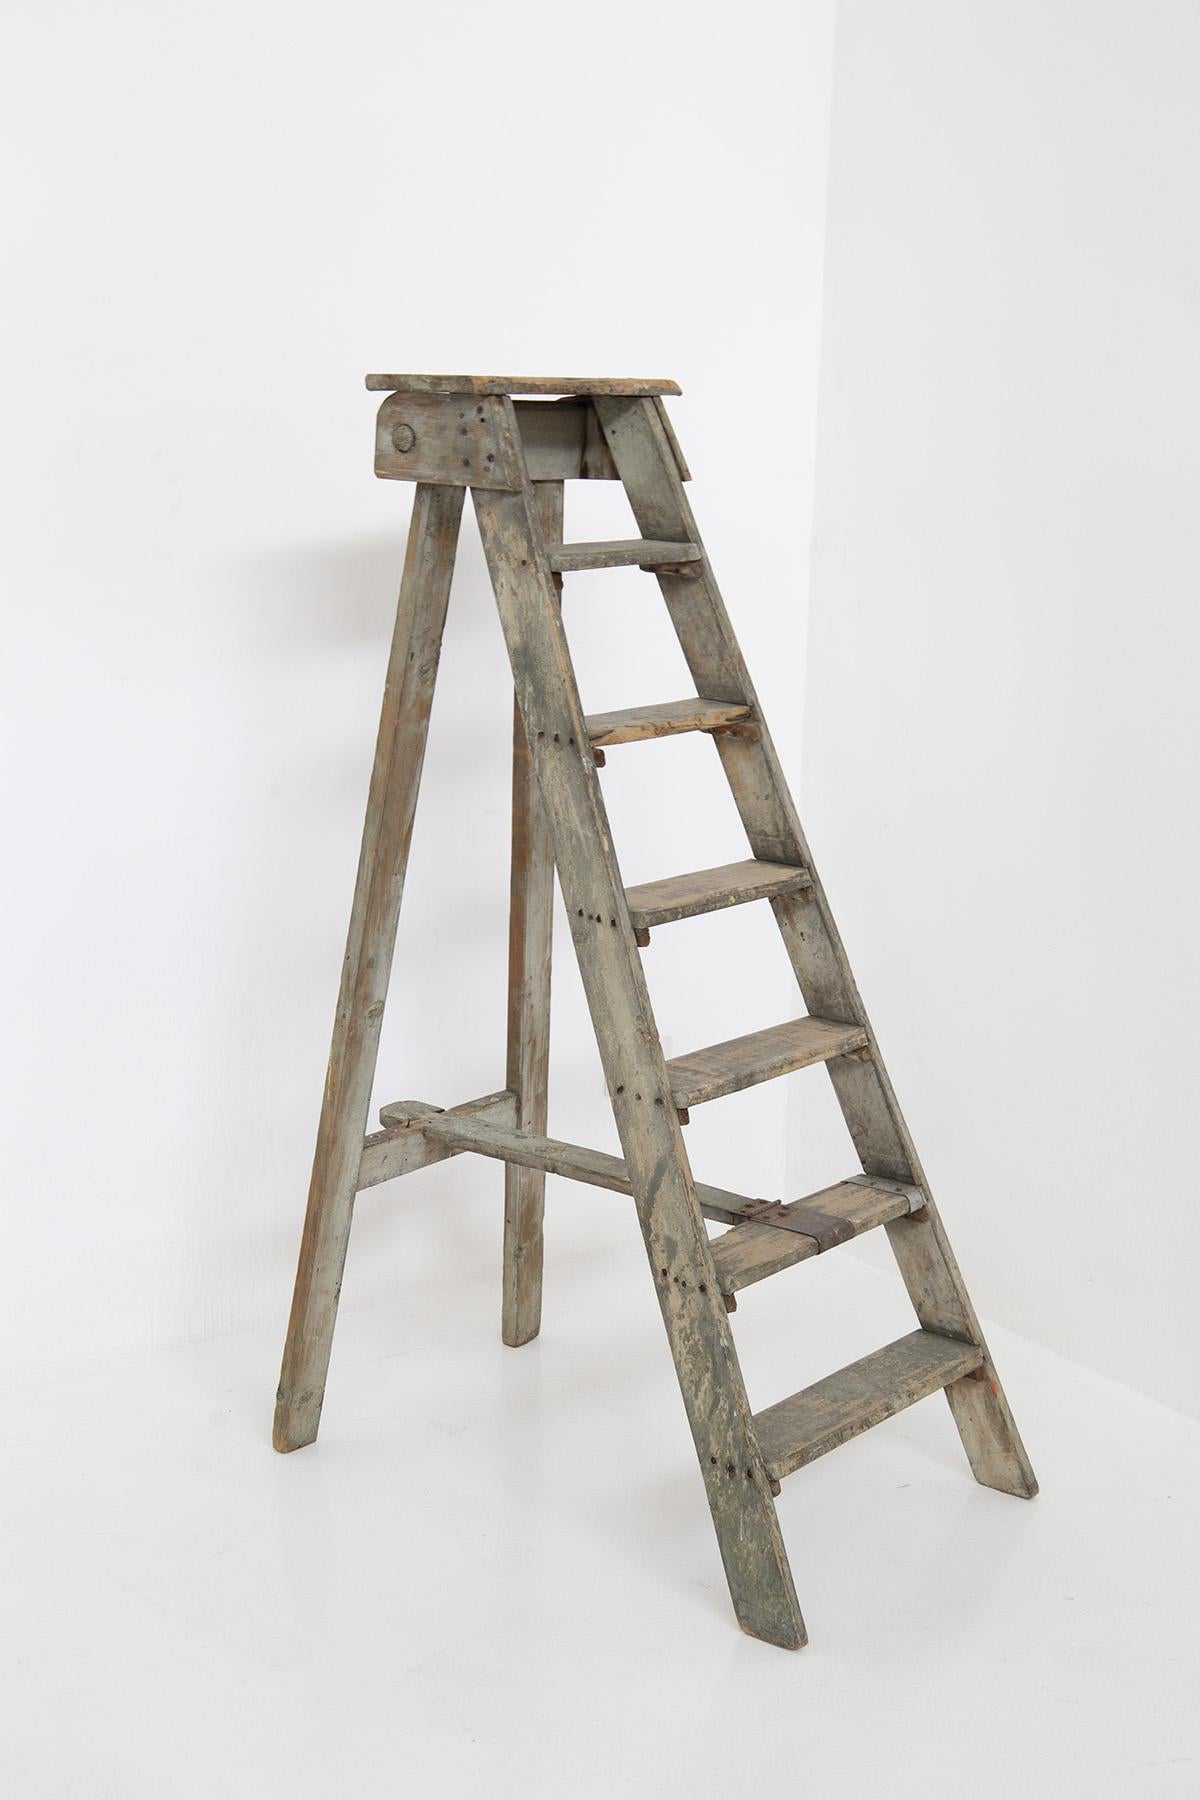 Fabelhafte rustikale italienische Vintage-Treppe aus den 1920er Jahren.
Die Treppe ist aus Holz gefertigt.
Die Leiter ist ein wunderschönes bemaltes Holzdekorationselement aus dem Rustic Chic der frühen 1920er Jahre, das in Italien hergestellt